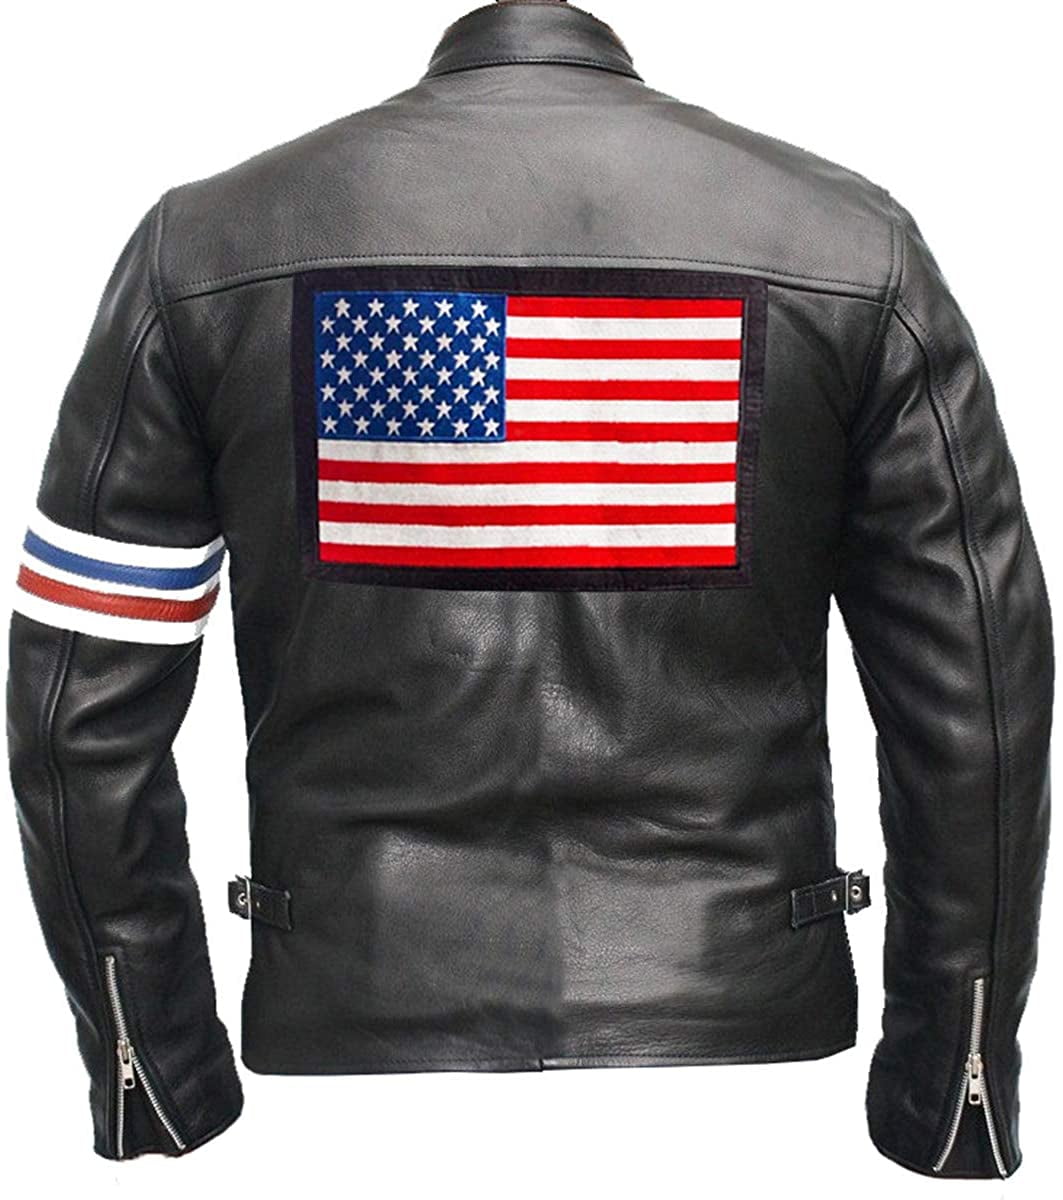 StyleV Faux Leather Jacket for Men,Vintage Fleece Fall Winter Warm Motorcycle Biker Classic Jacket Coat Outdoor